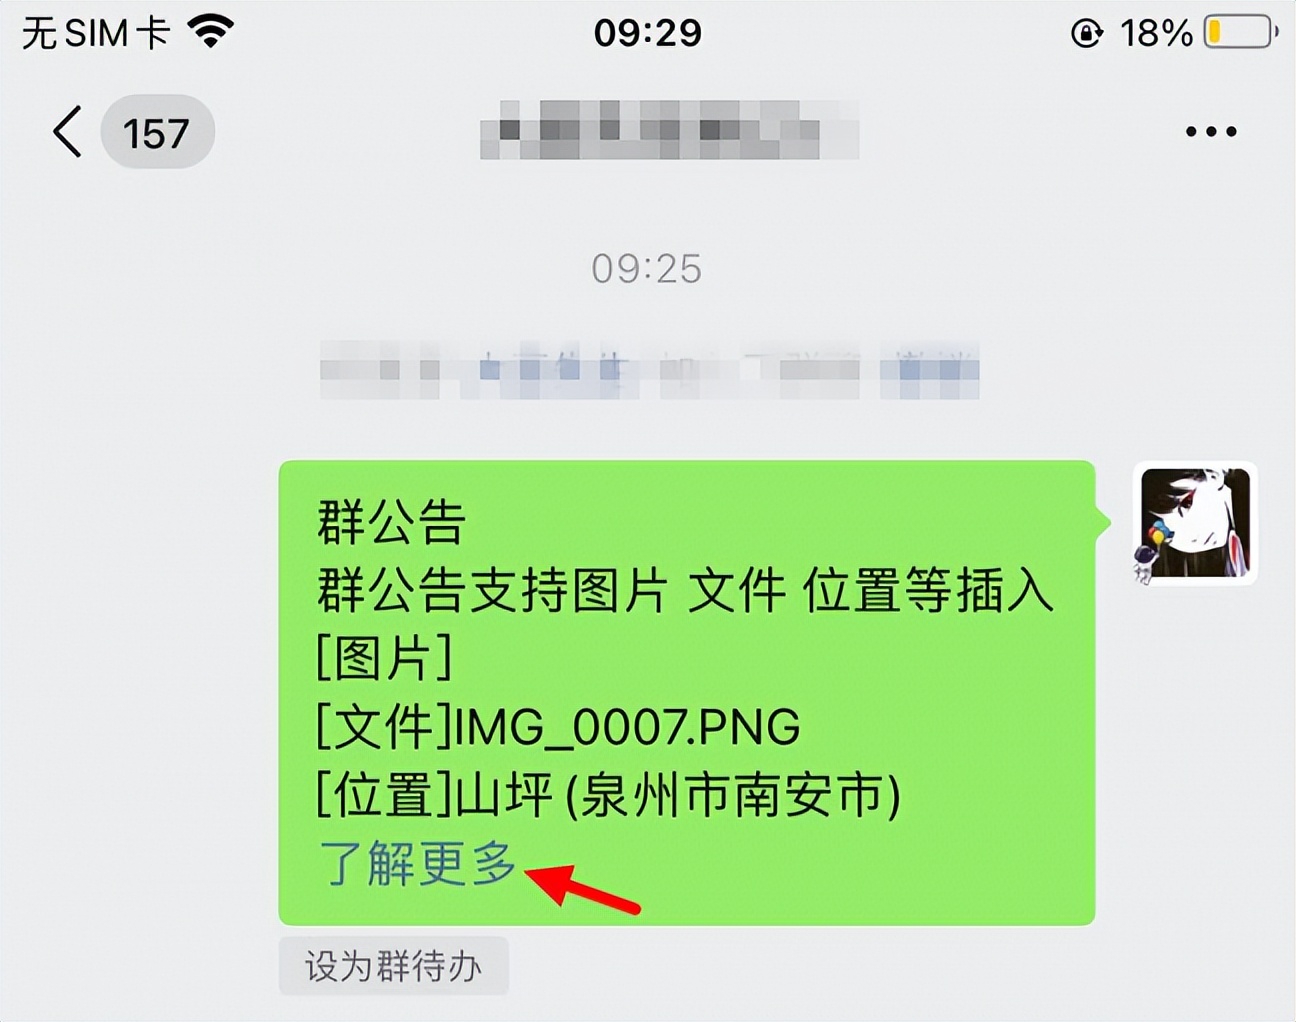 微信内测朋友圈内容转发 iOS微信8.0.21内测版新功能